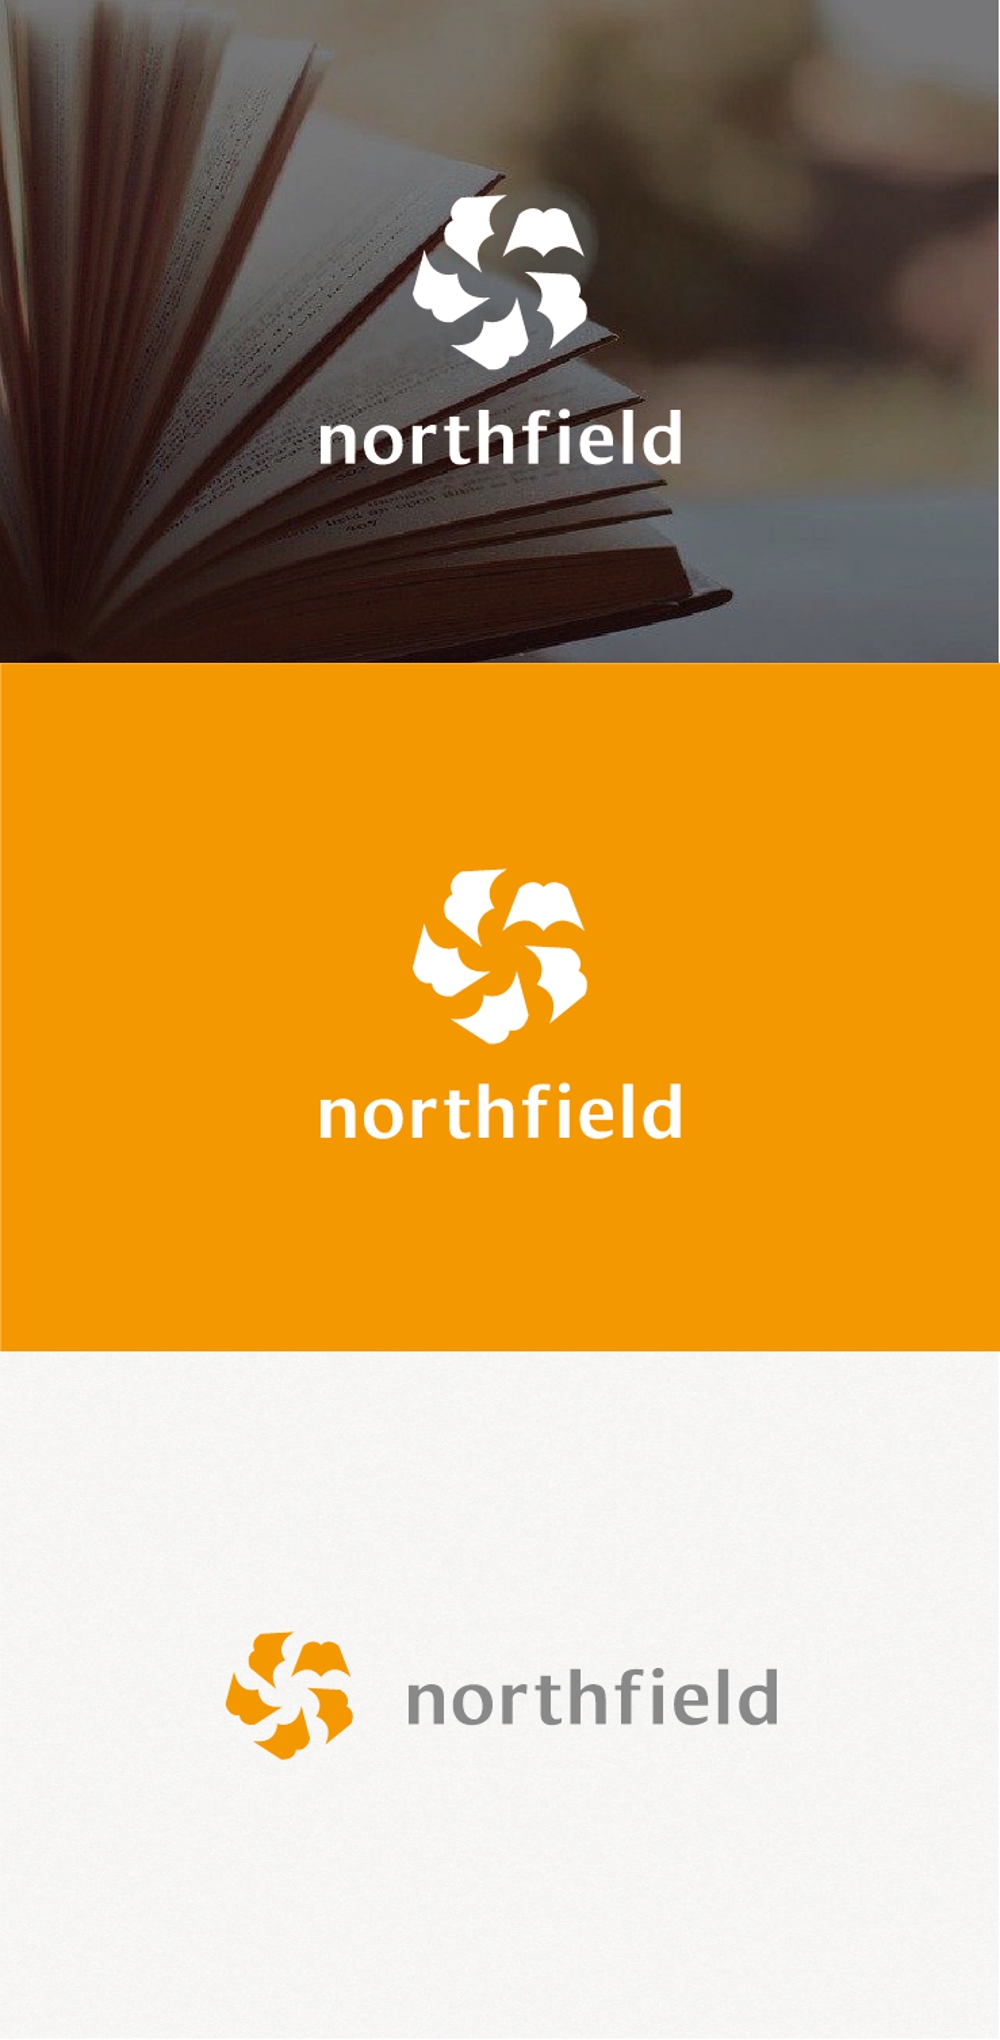 古本に関わる会社「northfield」のロゴ作成依頼。